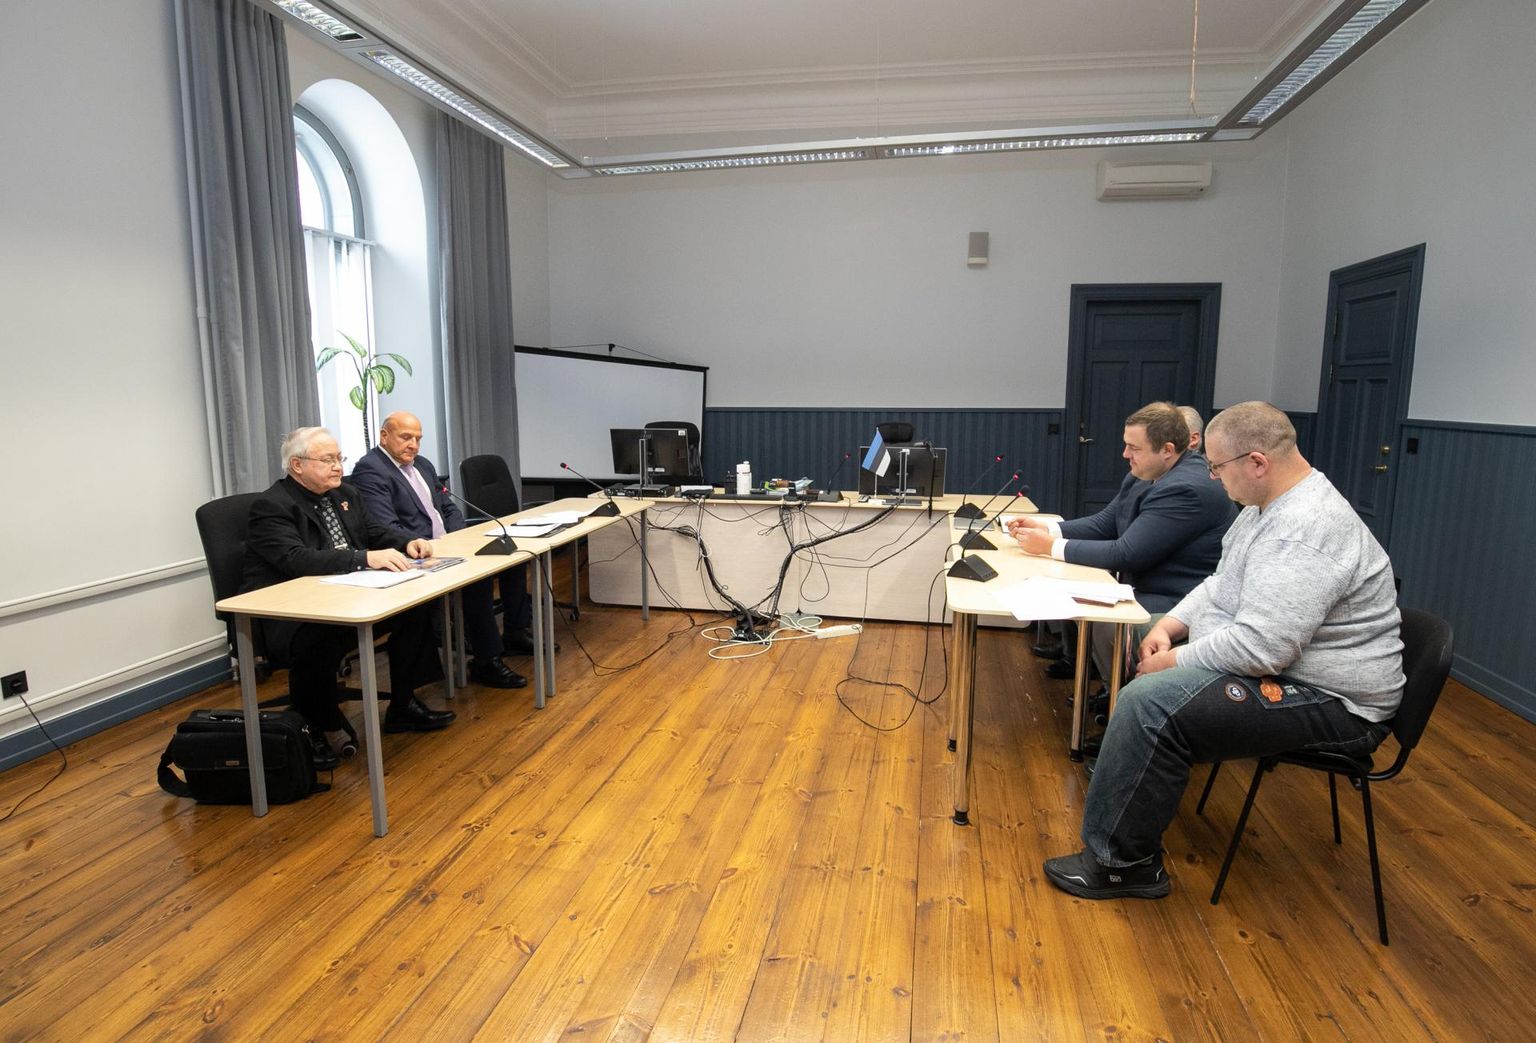 Riho Rannikmaa ja Andres Jaadla pöördusid kohtusse, et vaidlustada Eesti Sumoliidu üldkoosoleku otsused, millega nad liidust välja arvati.